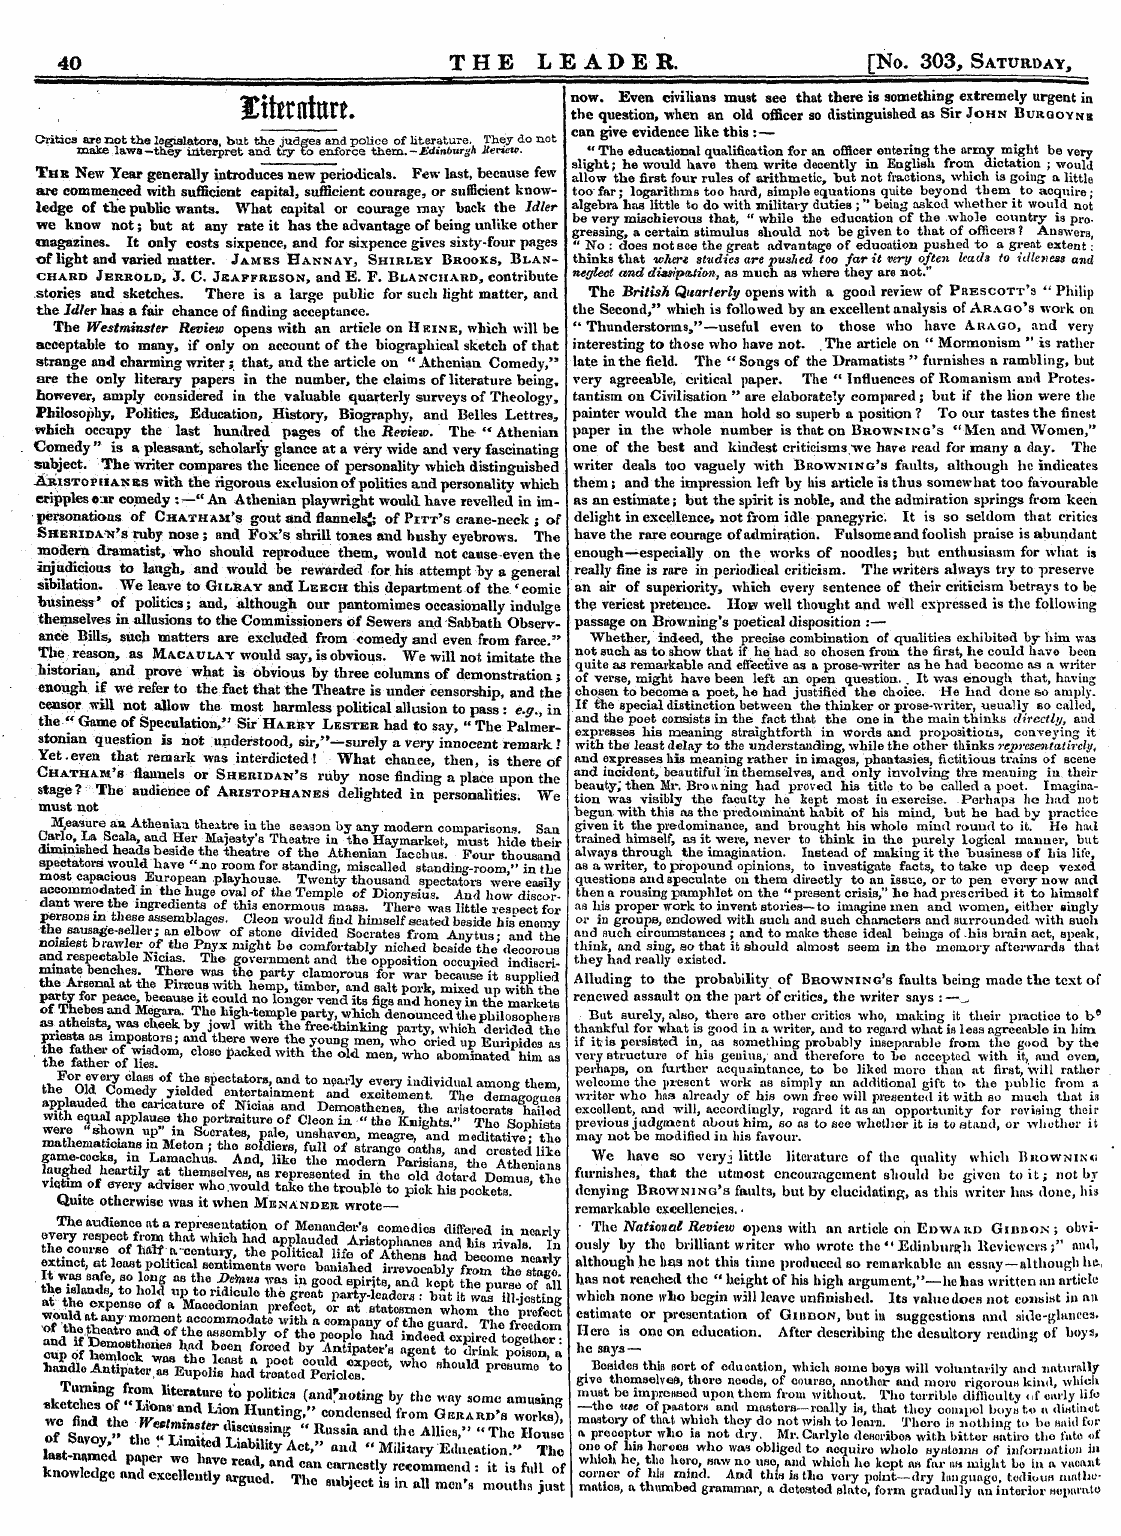 Leader (1850-1860): jS F Y, 2nd edition - H&Gt;*4&Gt; 4- &Ttttflttlf F • ¦